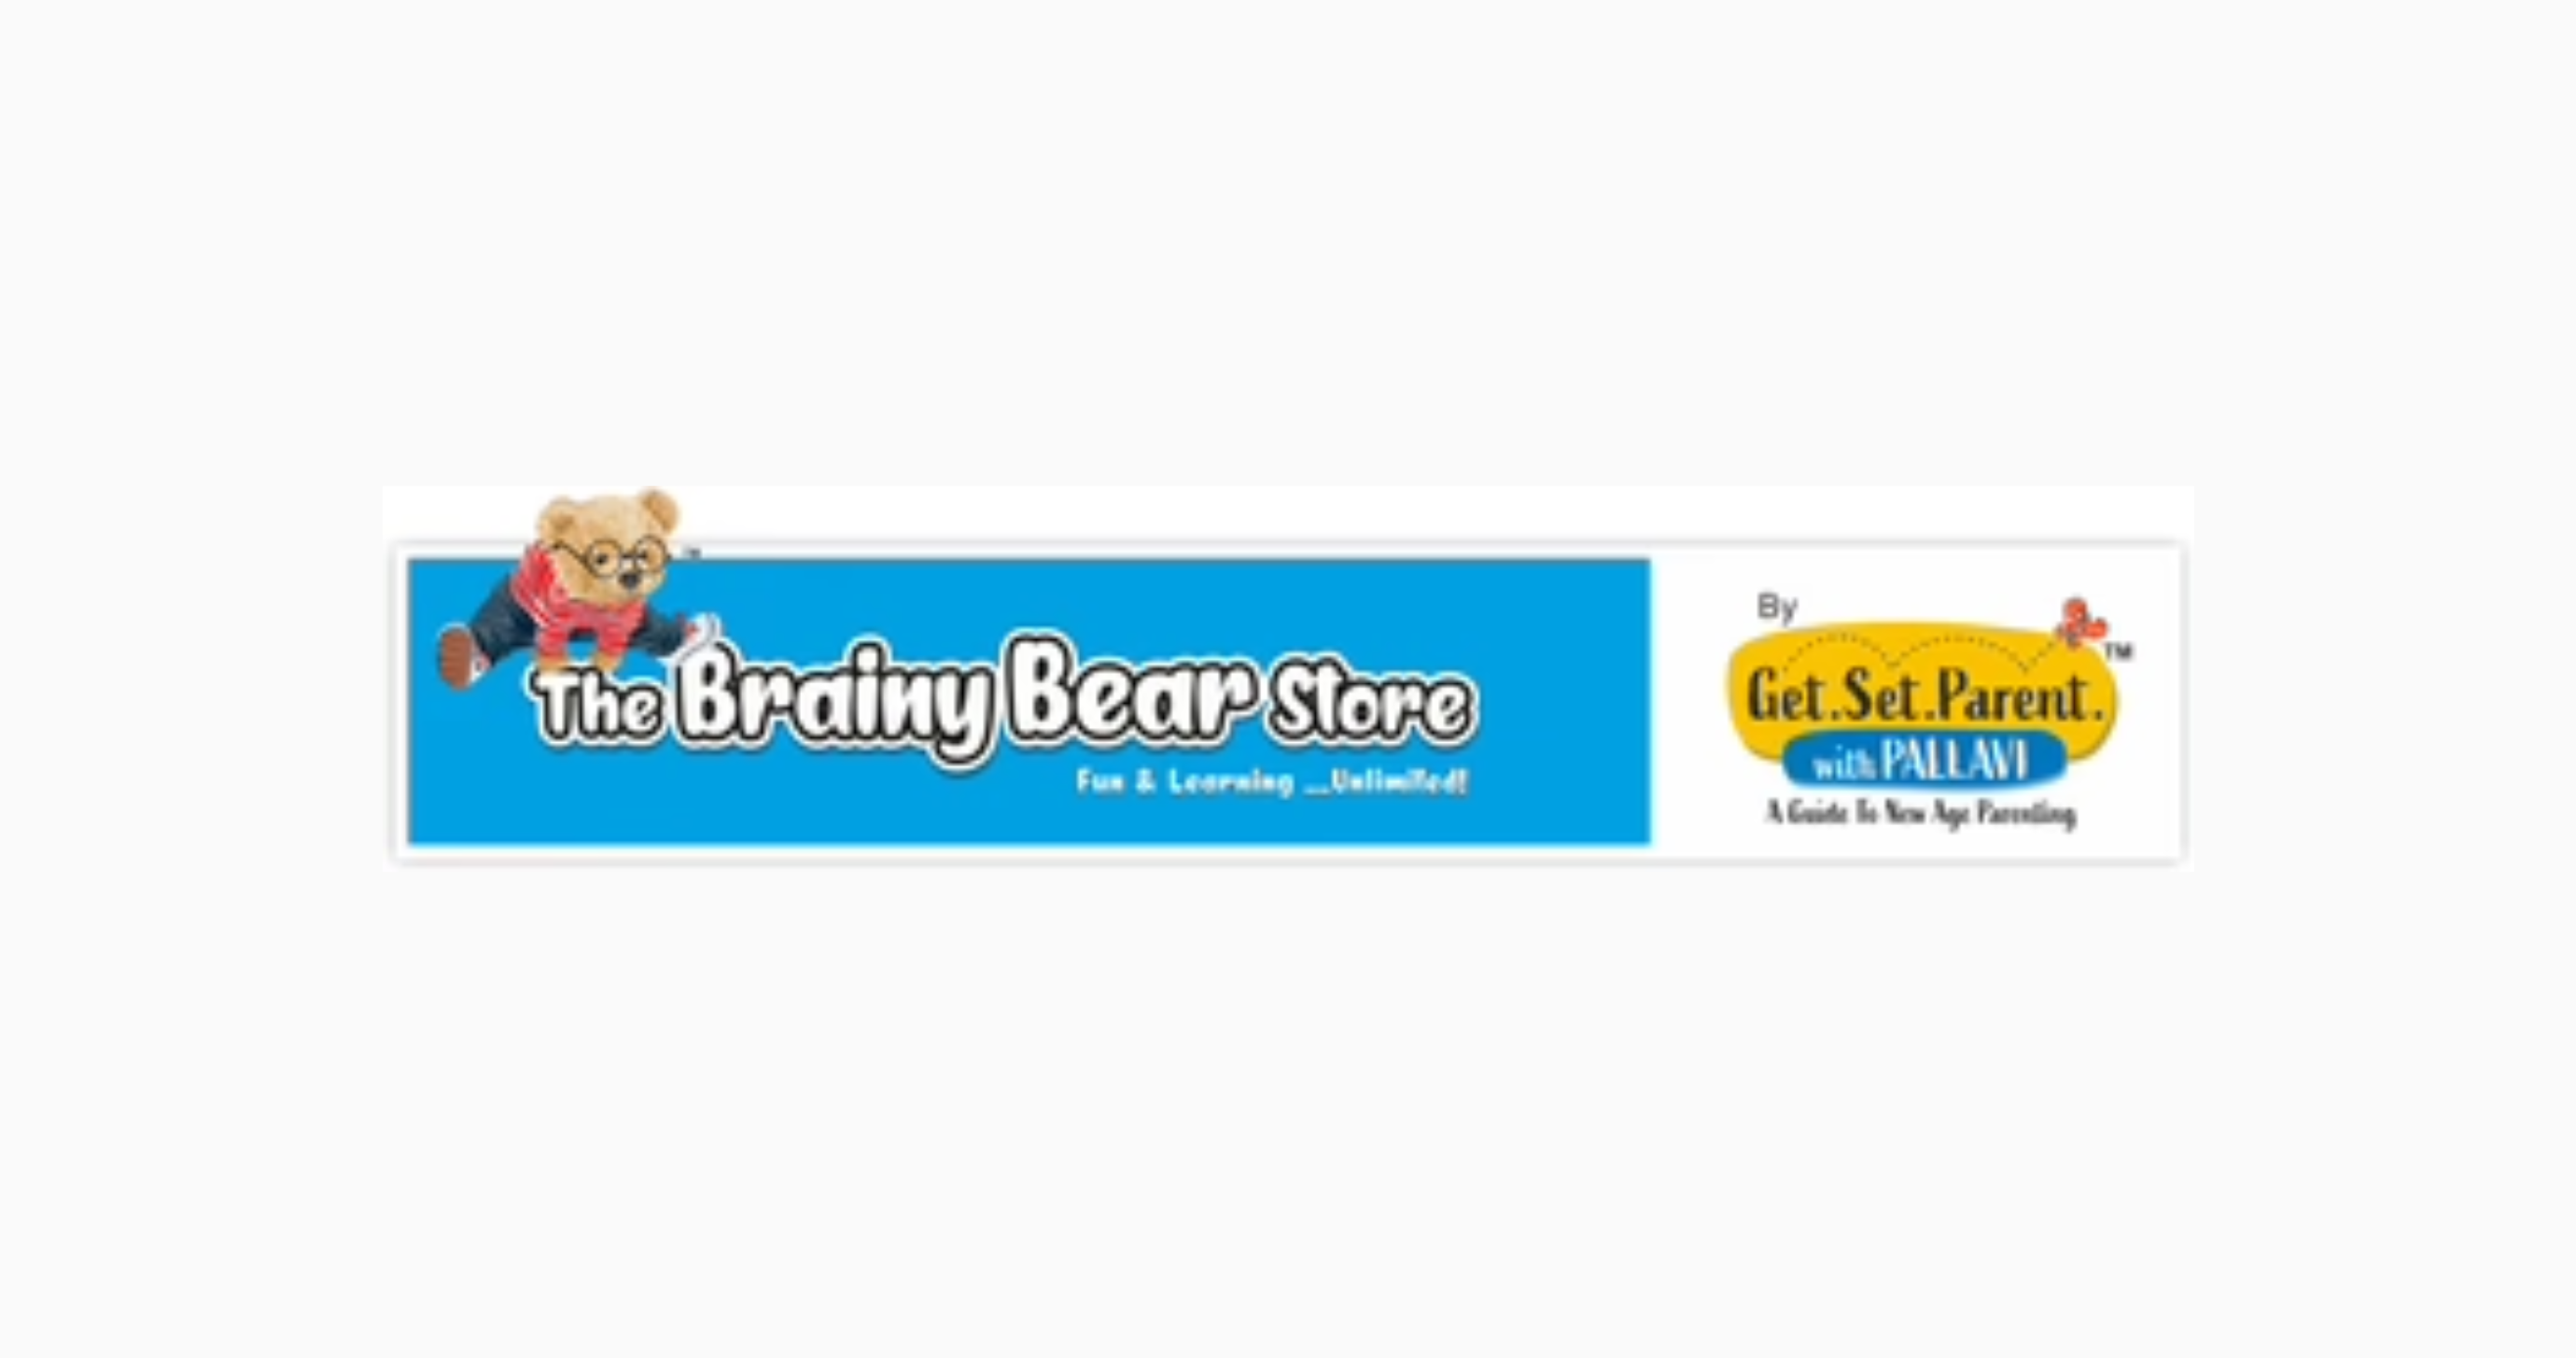 The Brainy bear store